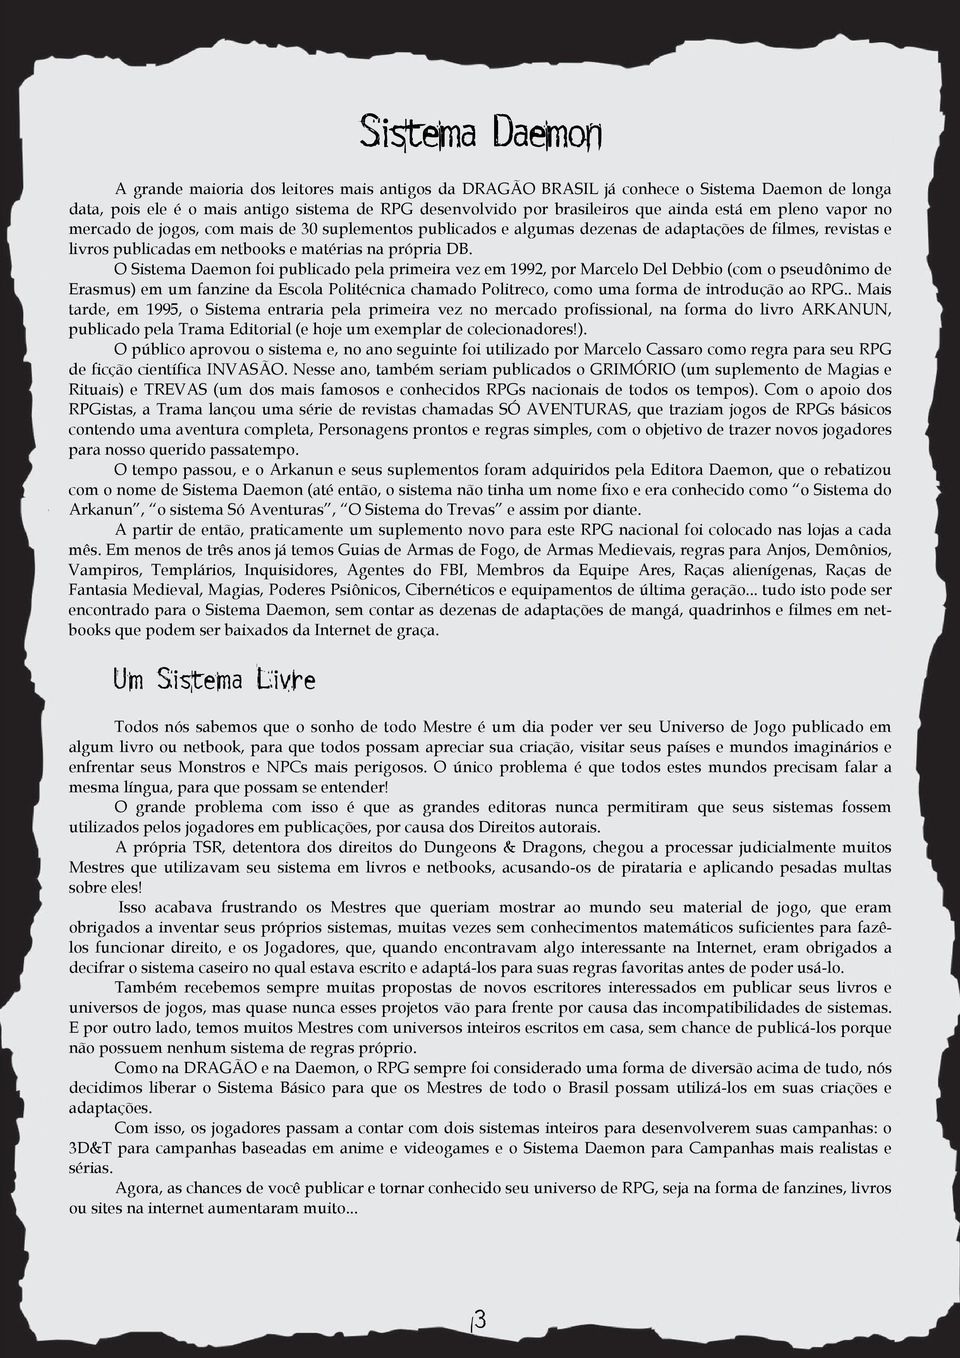 O Sistema Daemon foi publicado pela primeira vez em 1992, por Marcelo Del Debbio (com o pseudônimo de Erasmus) em um fanzine da Escola Politécnica chamado Politreco, como uma forma de introdução ao